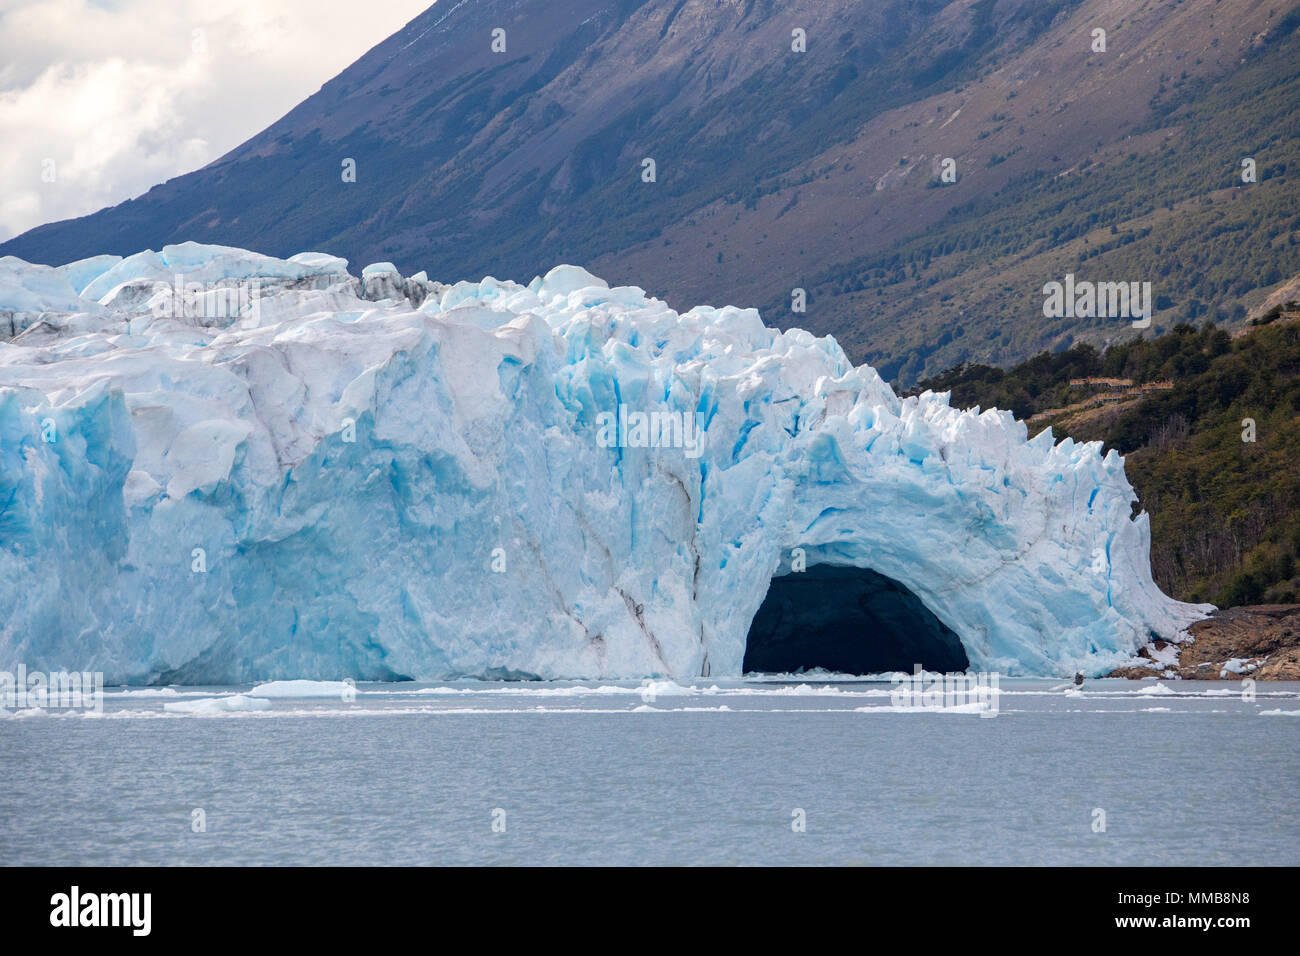 Perito Moreno glacier ice bridge, Patagonia, Argentina Stock Photo